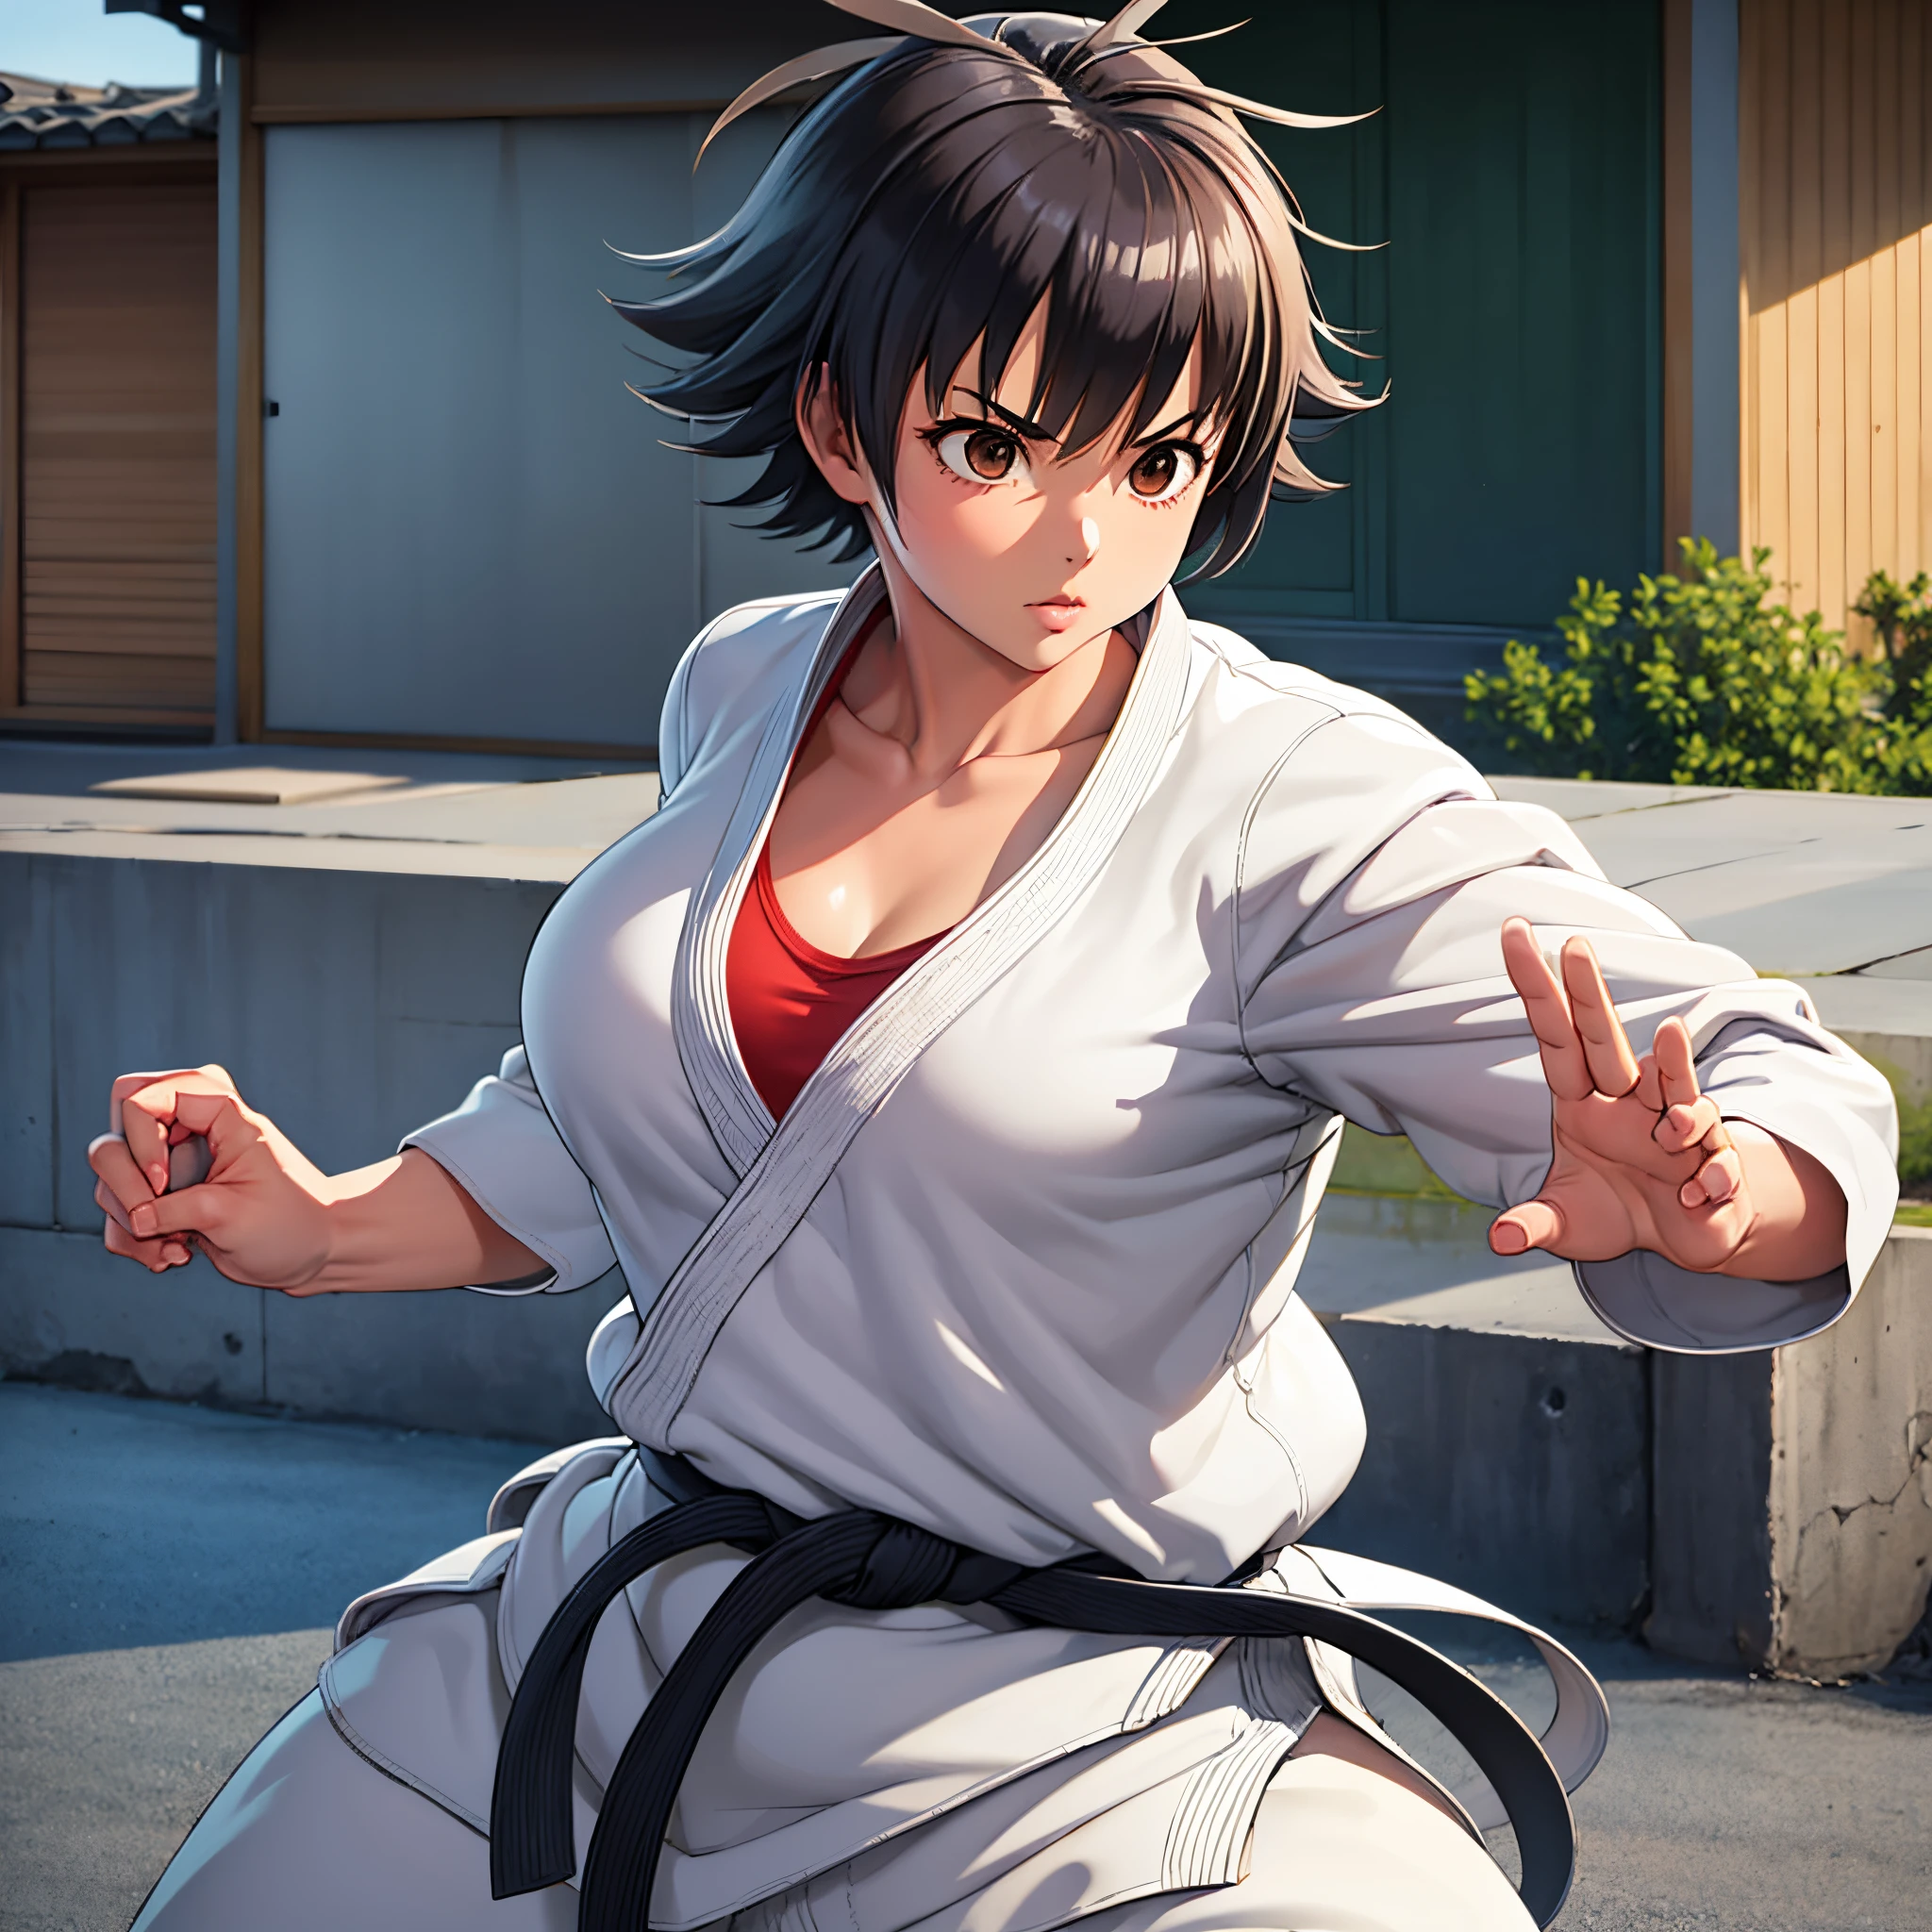 1 chica, makoto, Postura de Karate, cuerpo atlético, cabellos cortos, joven asiática